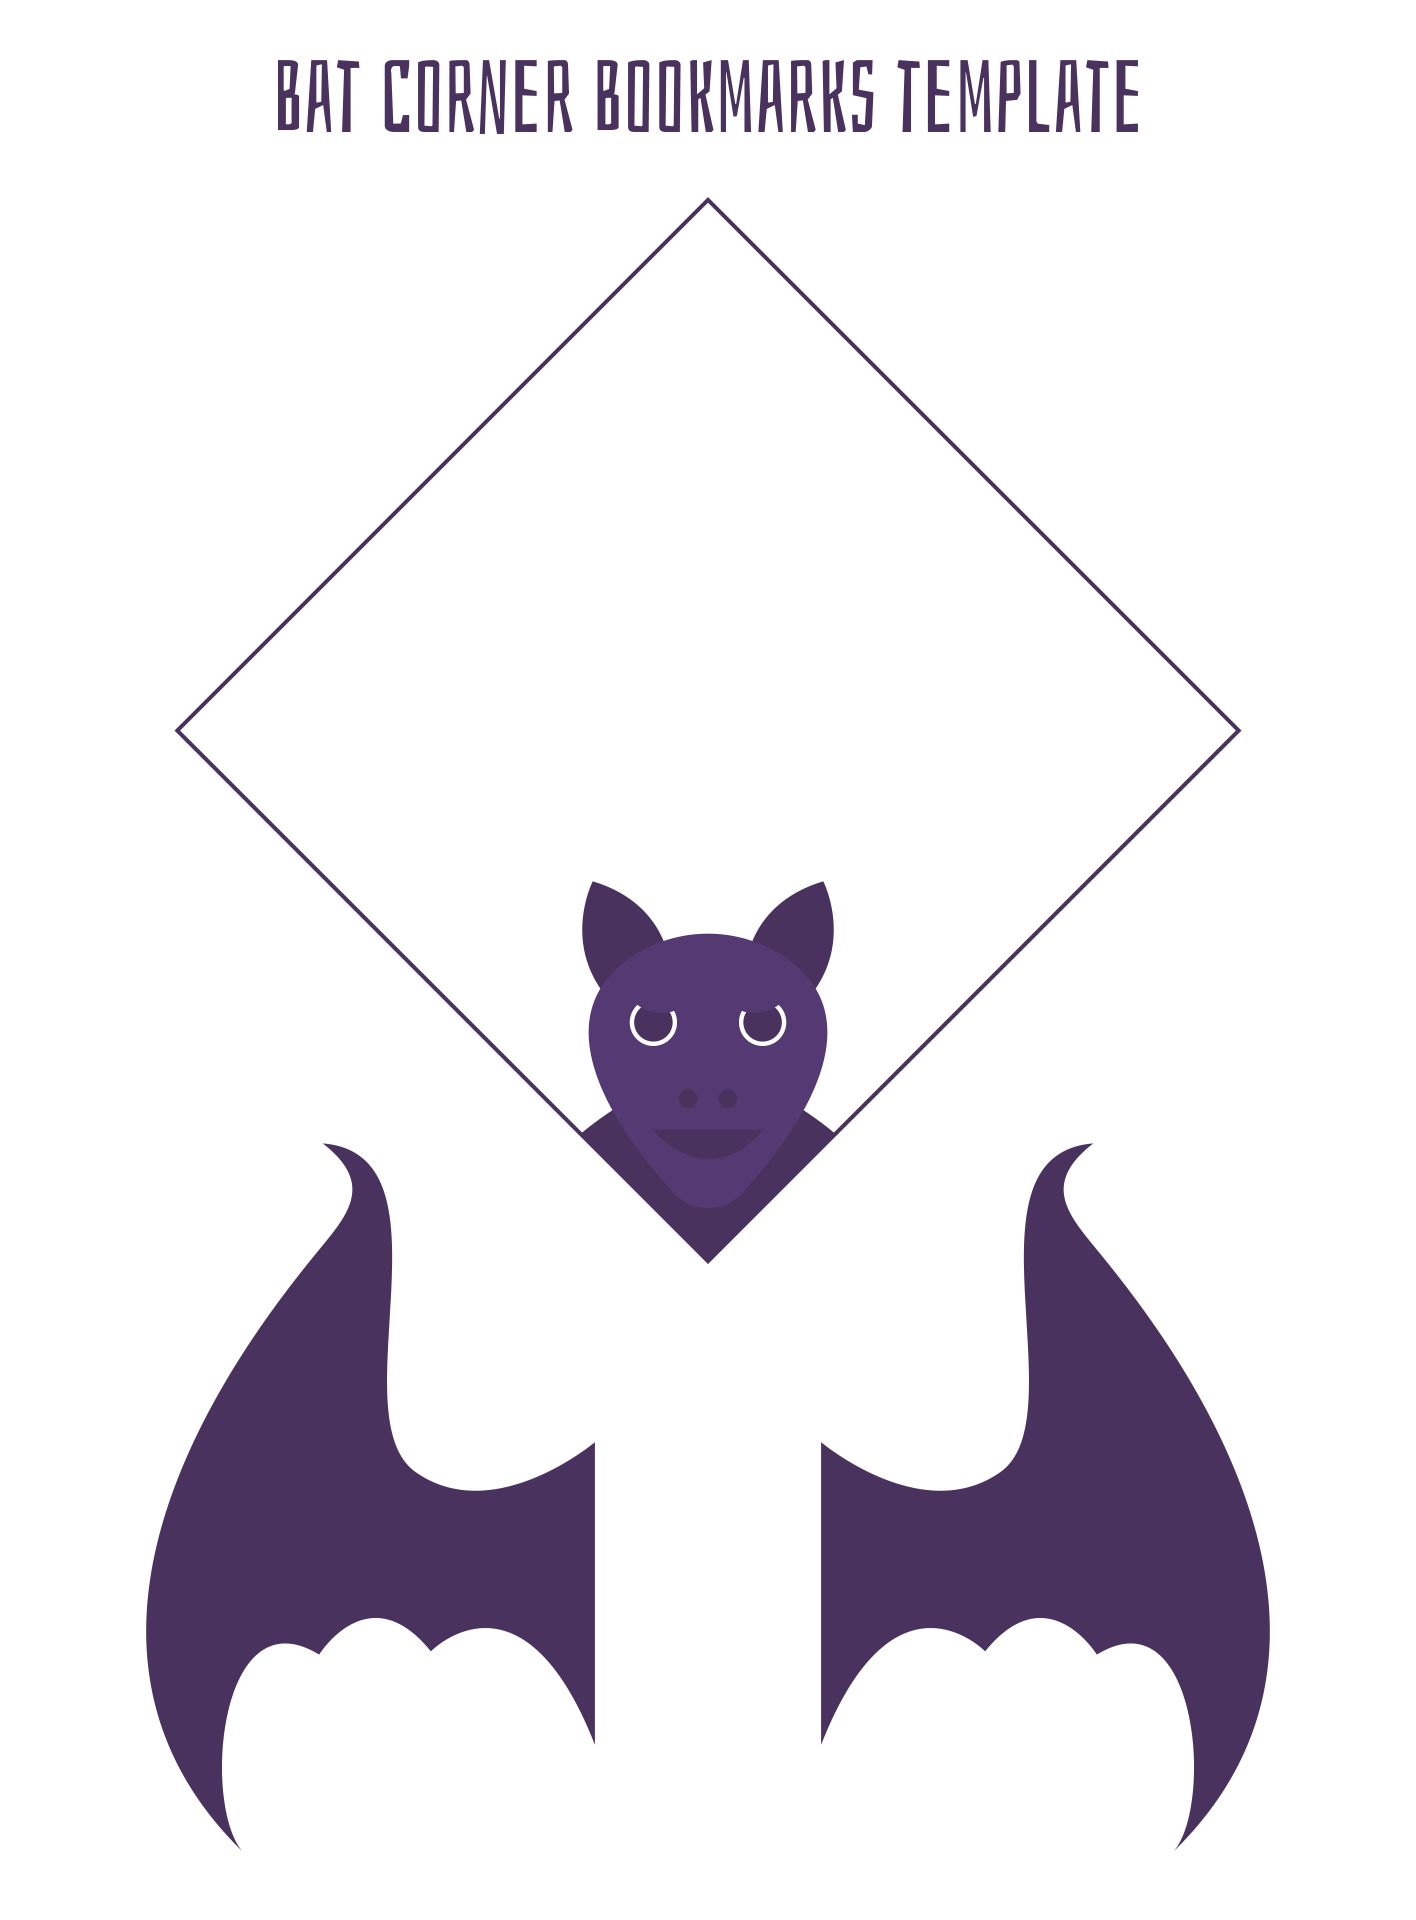 DIY Bat Corner Bookmarks Printable